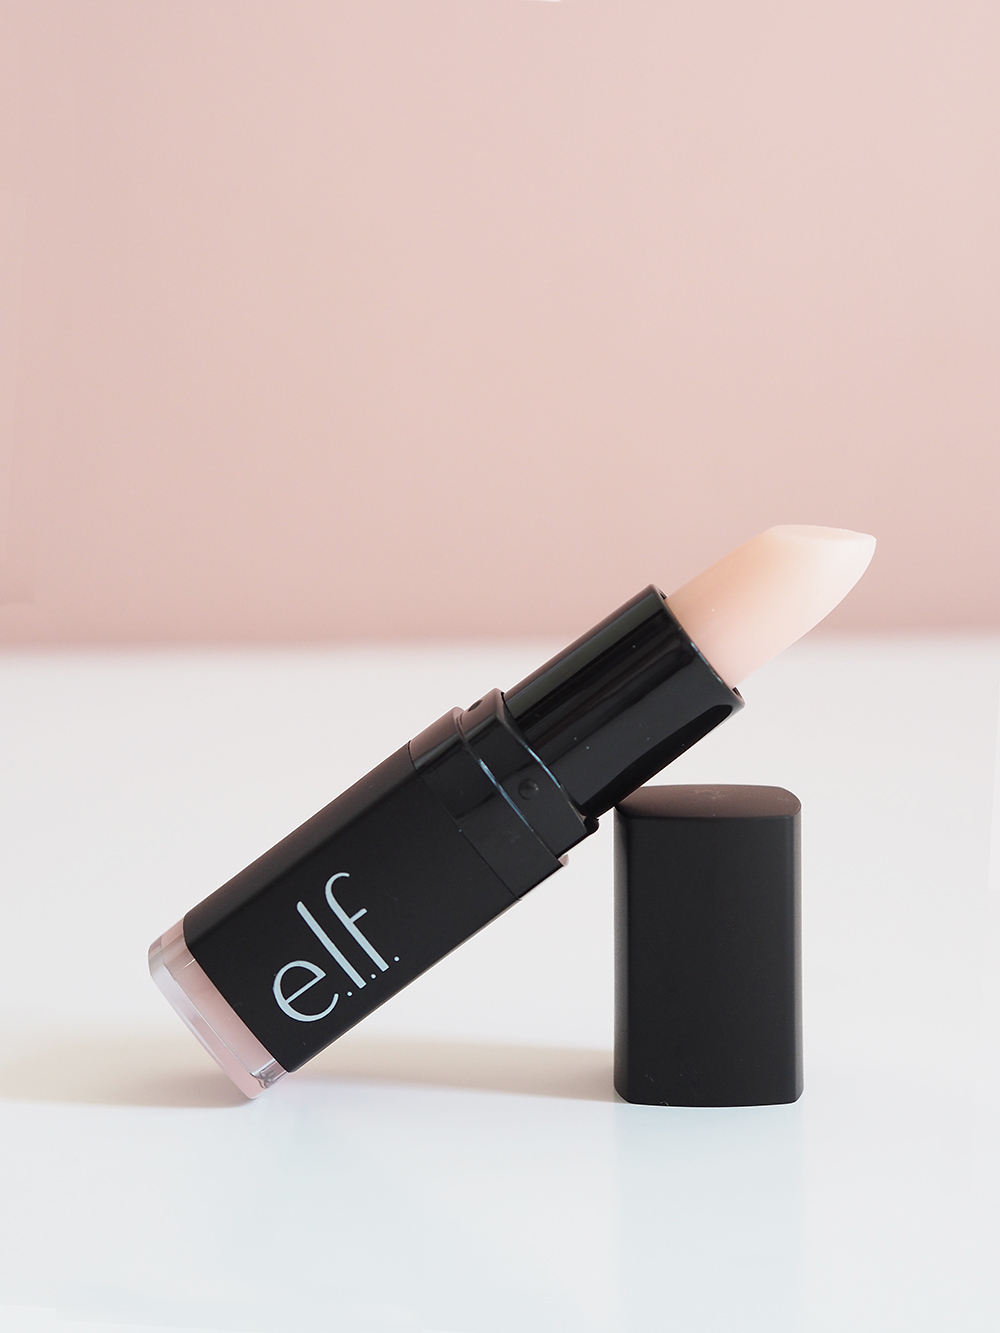 ELF cosmetics makeup blusher